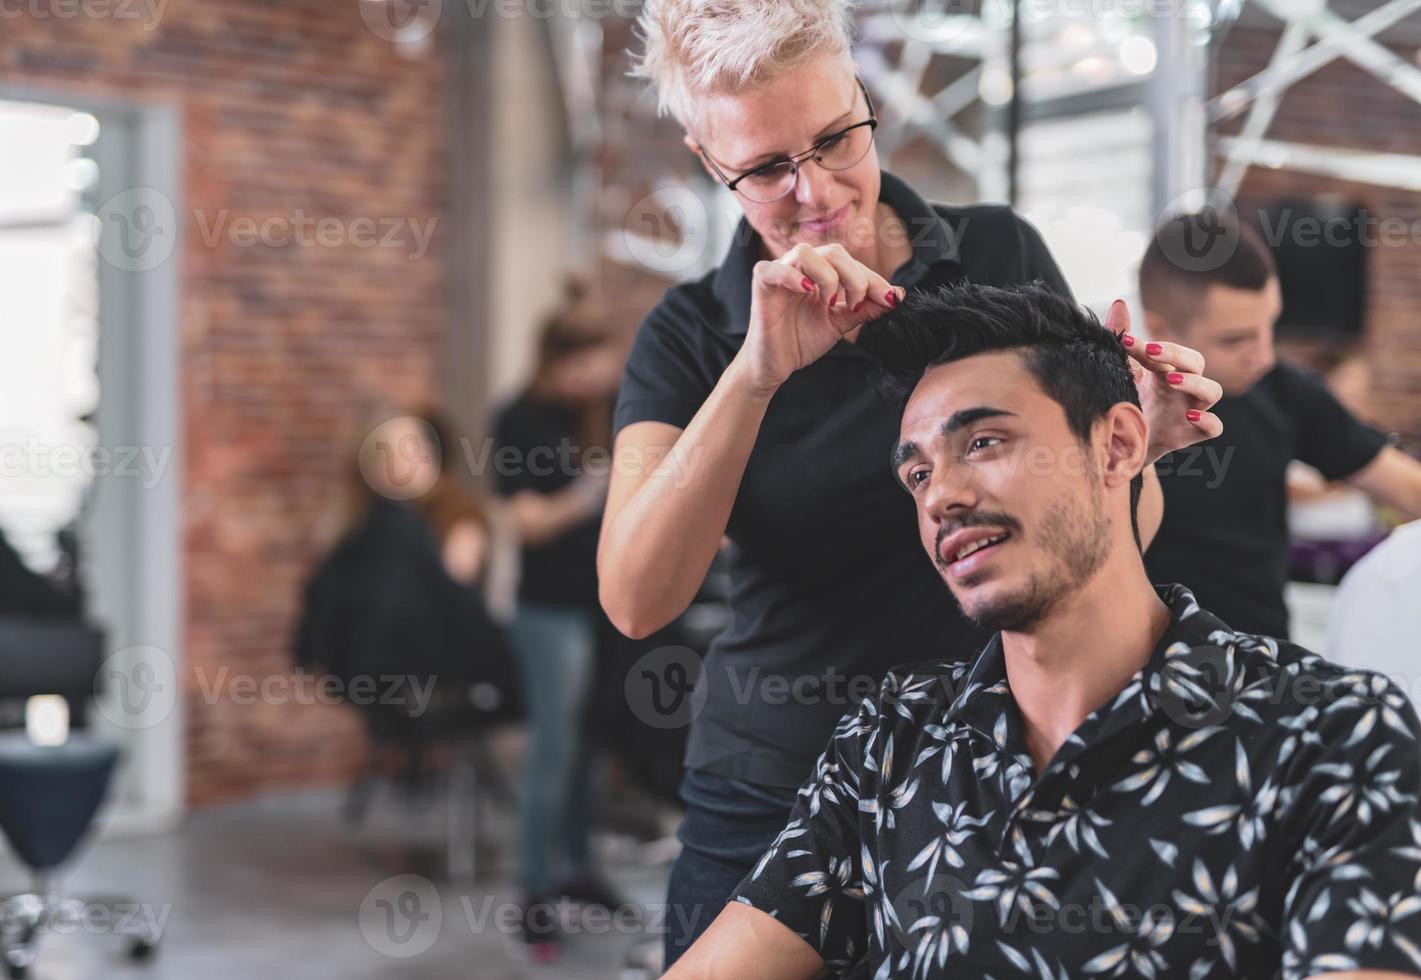 cabeleireiro profissional está cortando o cabelo masculino no salão de beleza. foto